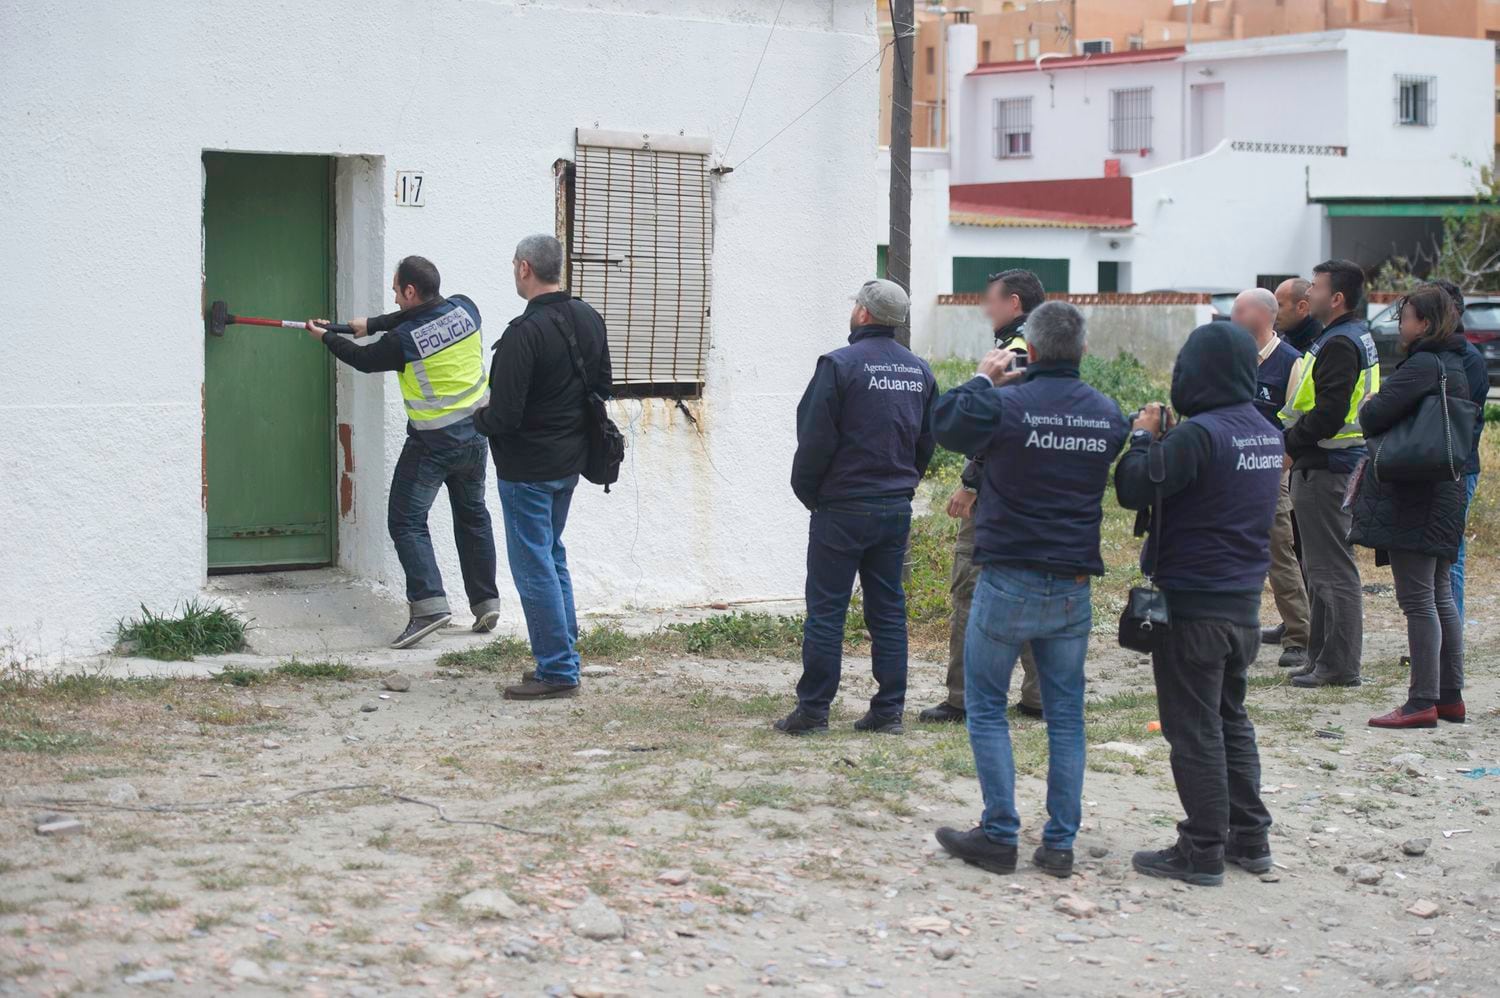 Una de las guarderías de tabaco registradas por agentes del Cuerpo Nacional de Policía y de Aduanas (Agencia Tributaria) en la Operación Poniente en La Línea de la Concepción (Cádiz). 